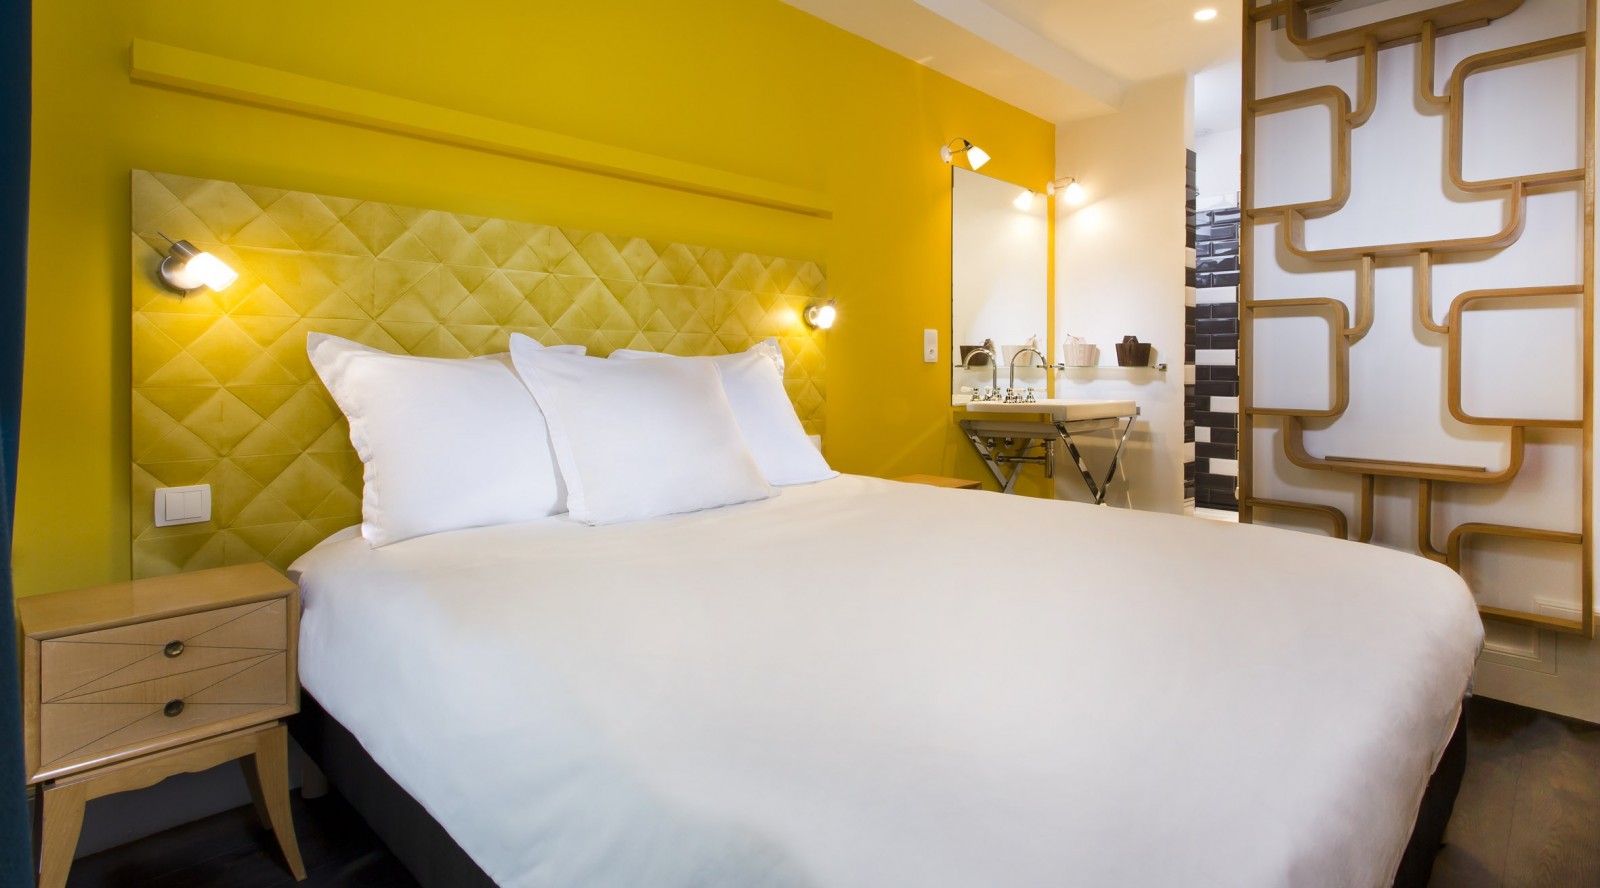 1er Etage Marais | Hotel Saint Paul Paris | Double Room - OFFICIAL SITE